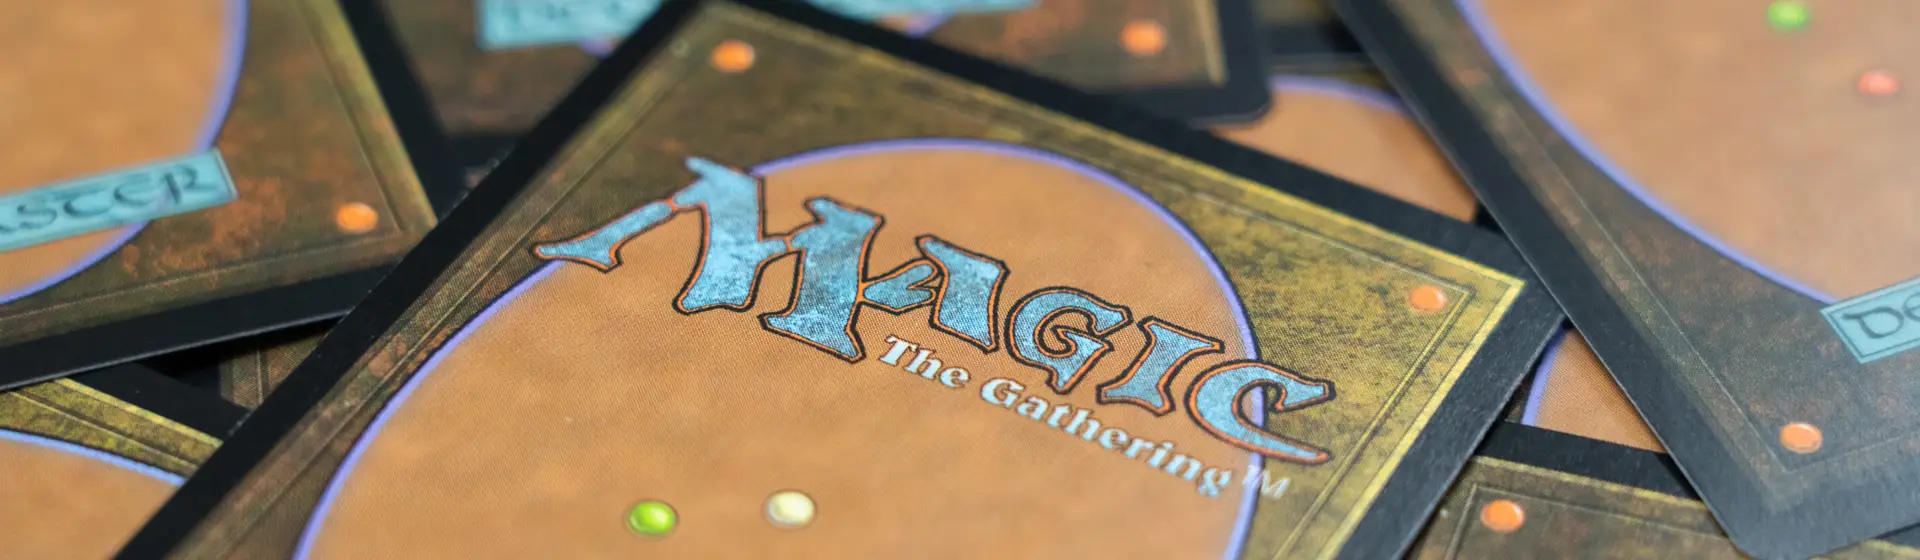 Magic: The Gathering: confira bons decks e cartas para arrasar no game